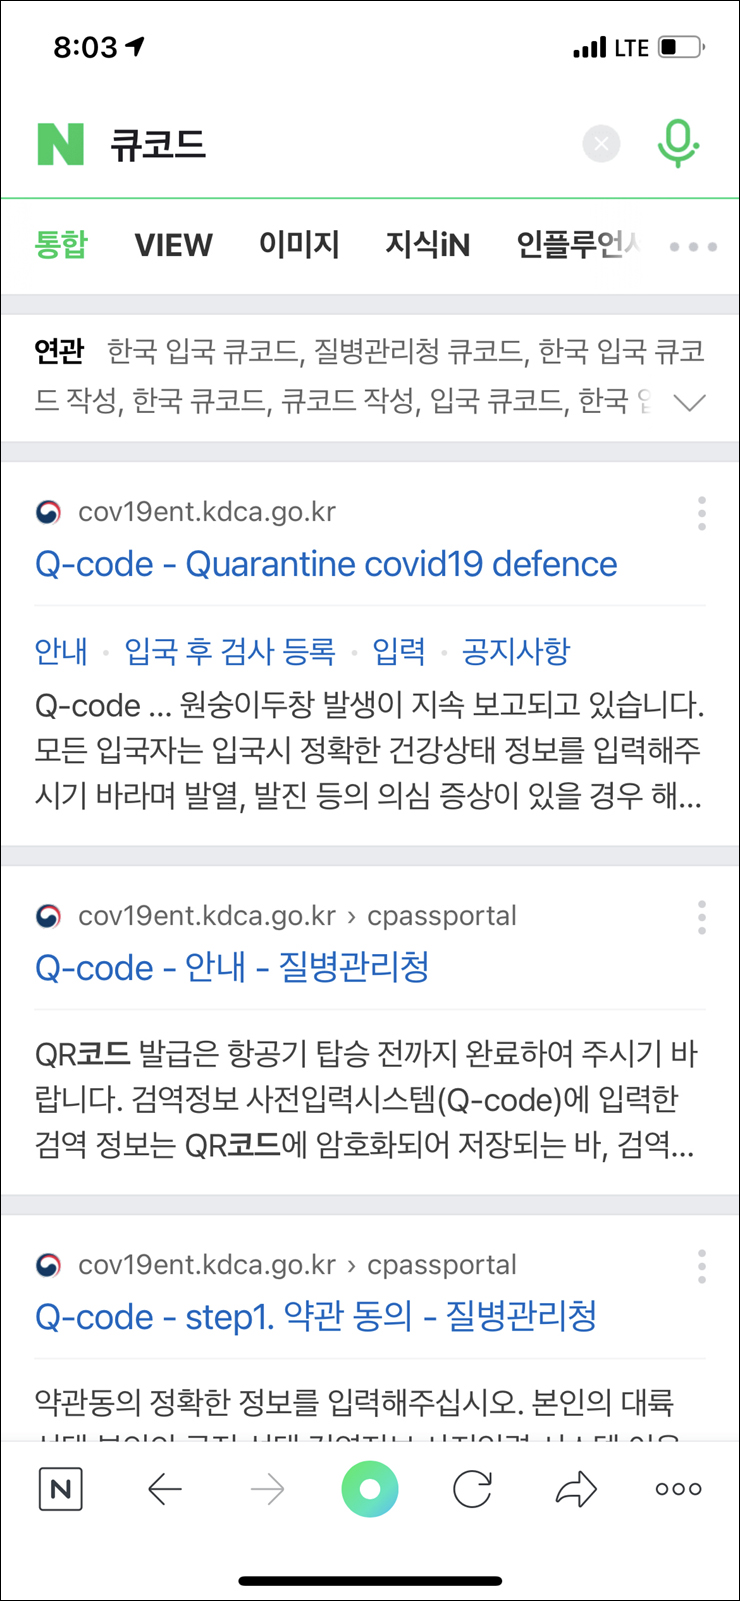 인천공항 입국 절차 한국 입국 큐코드 작성 질병관리청 Q코드